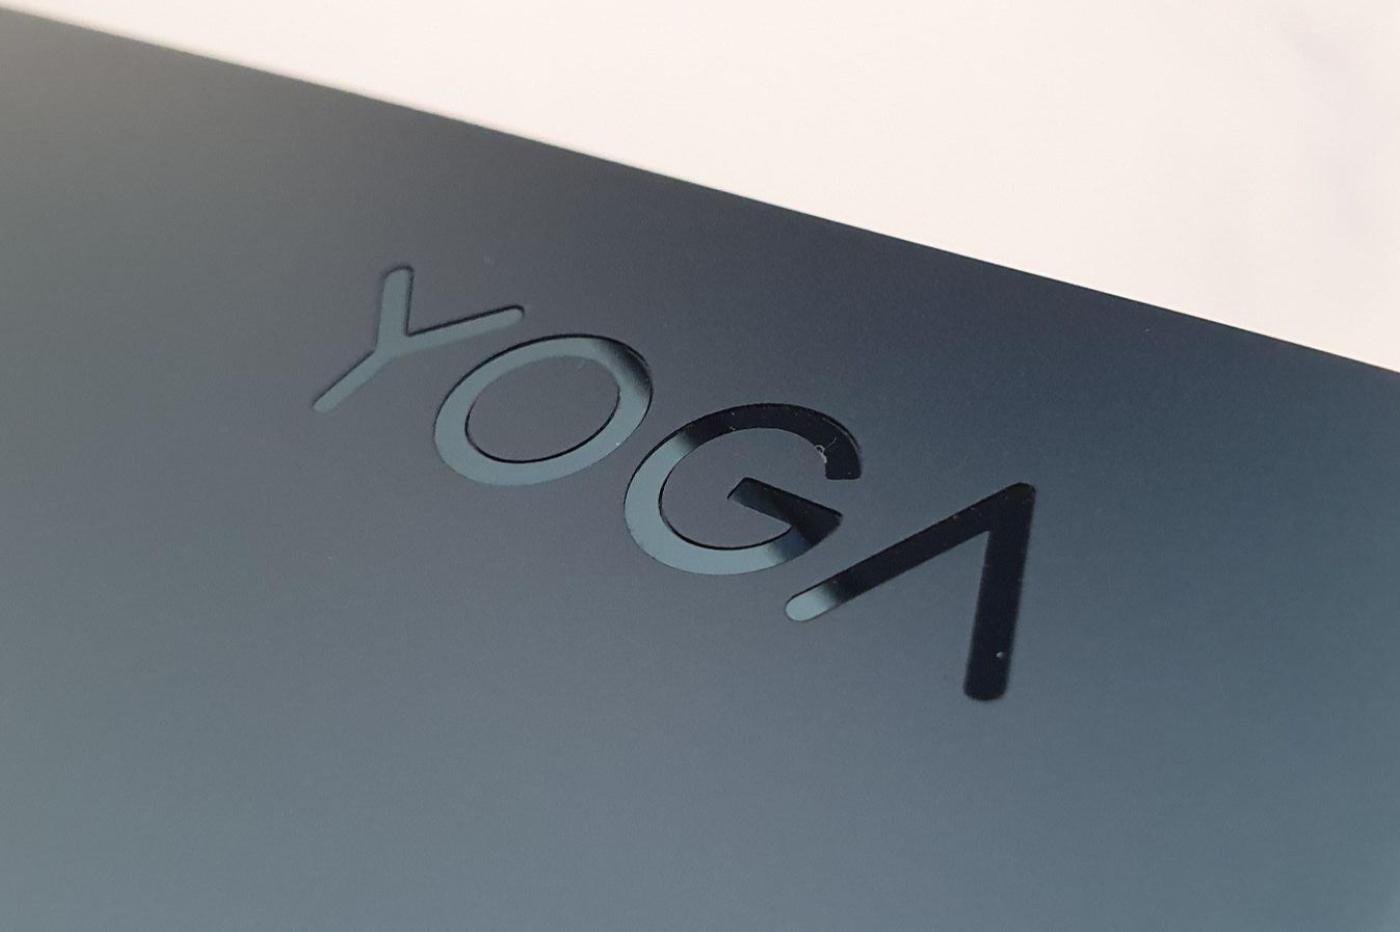 Le Yoga Pro 9i